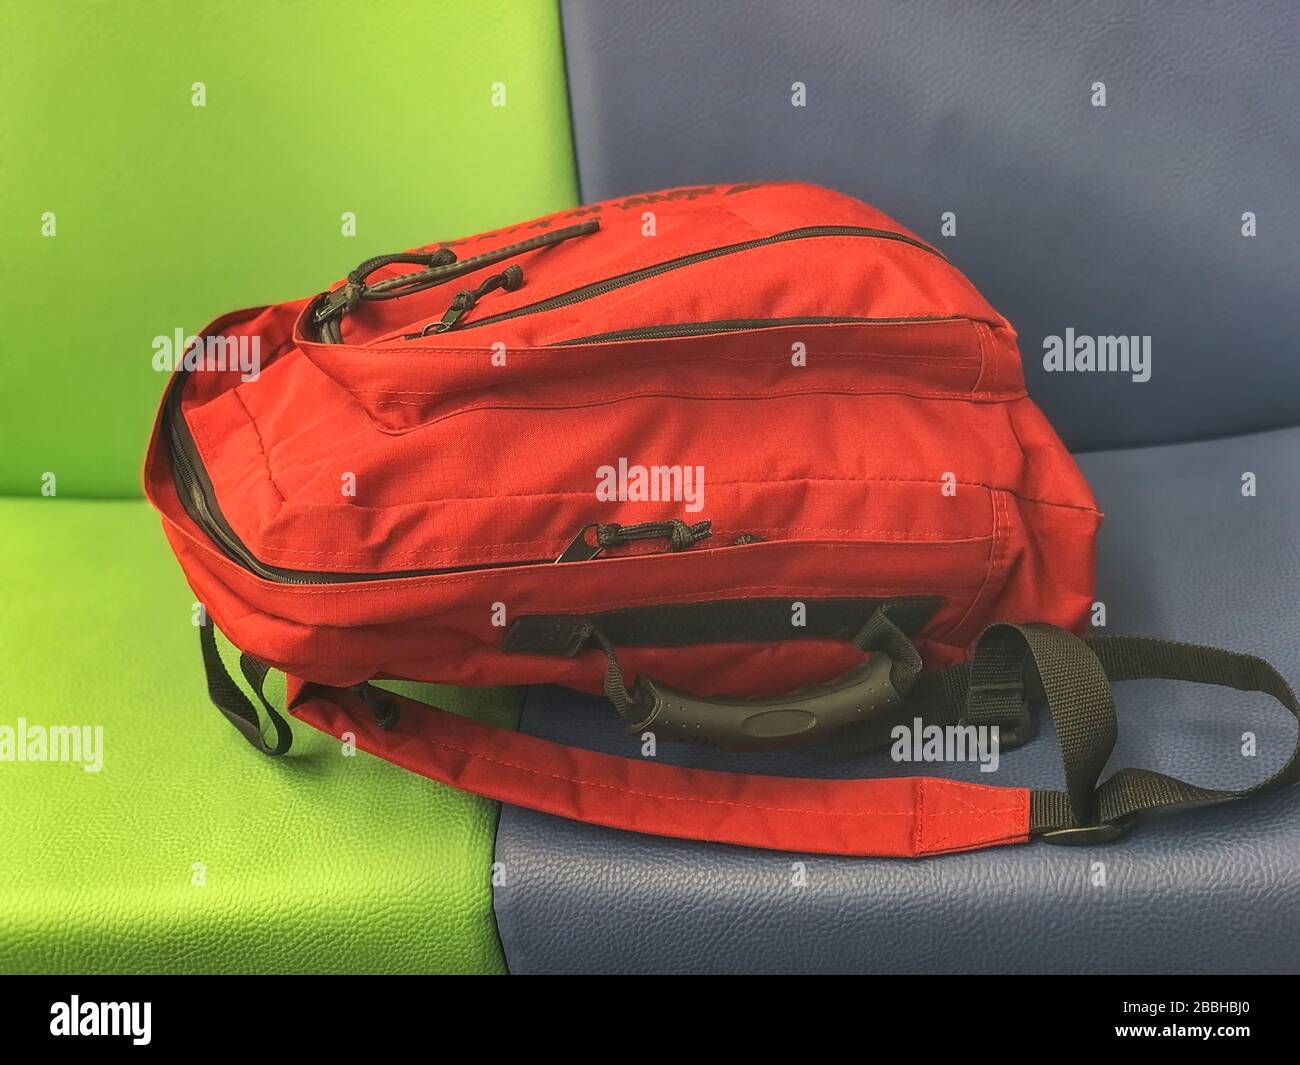 Roter urbaner Jugendrucksack auf einem hellen mehrfarbigen Sitz Stockfoto